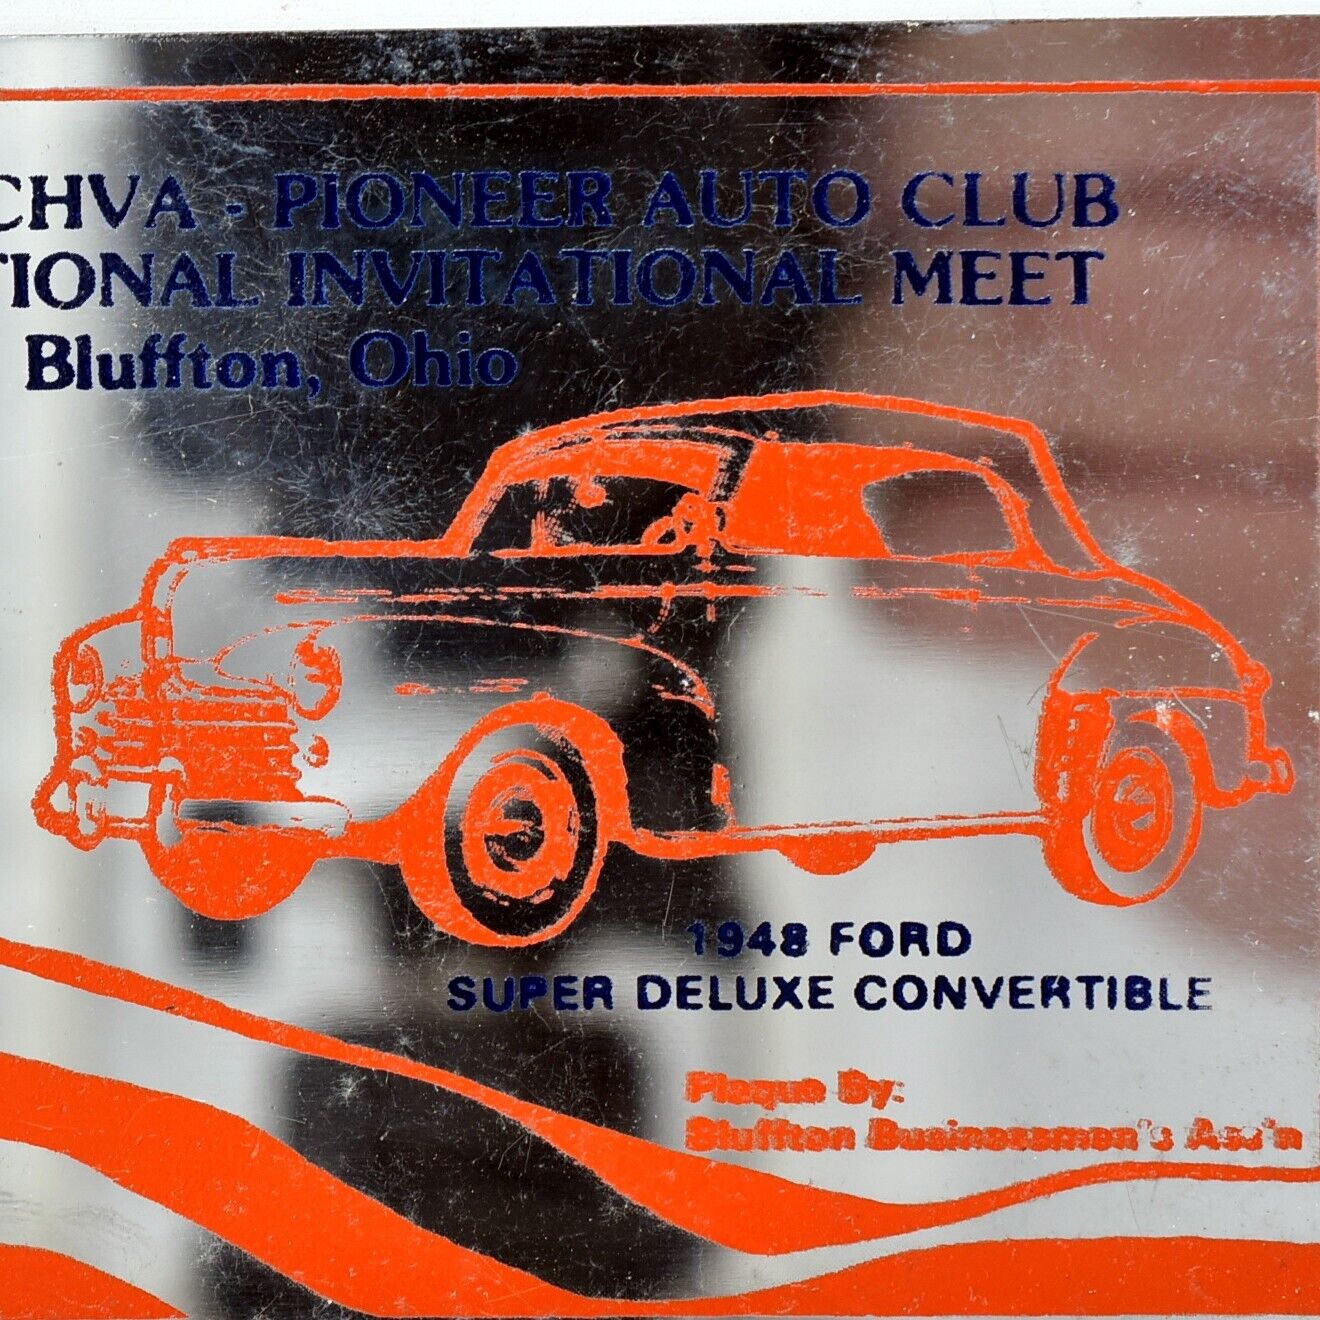 1976 CHVA Pioneer Auto Club 1948 Ford Super Deluxe Convertible Bluffton Shannon